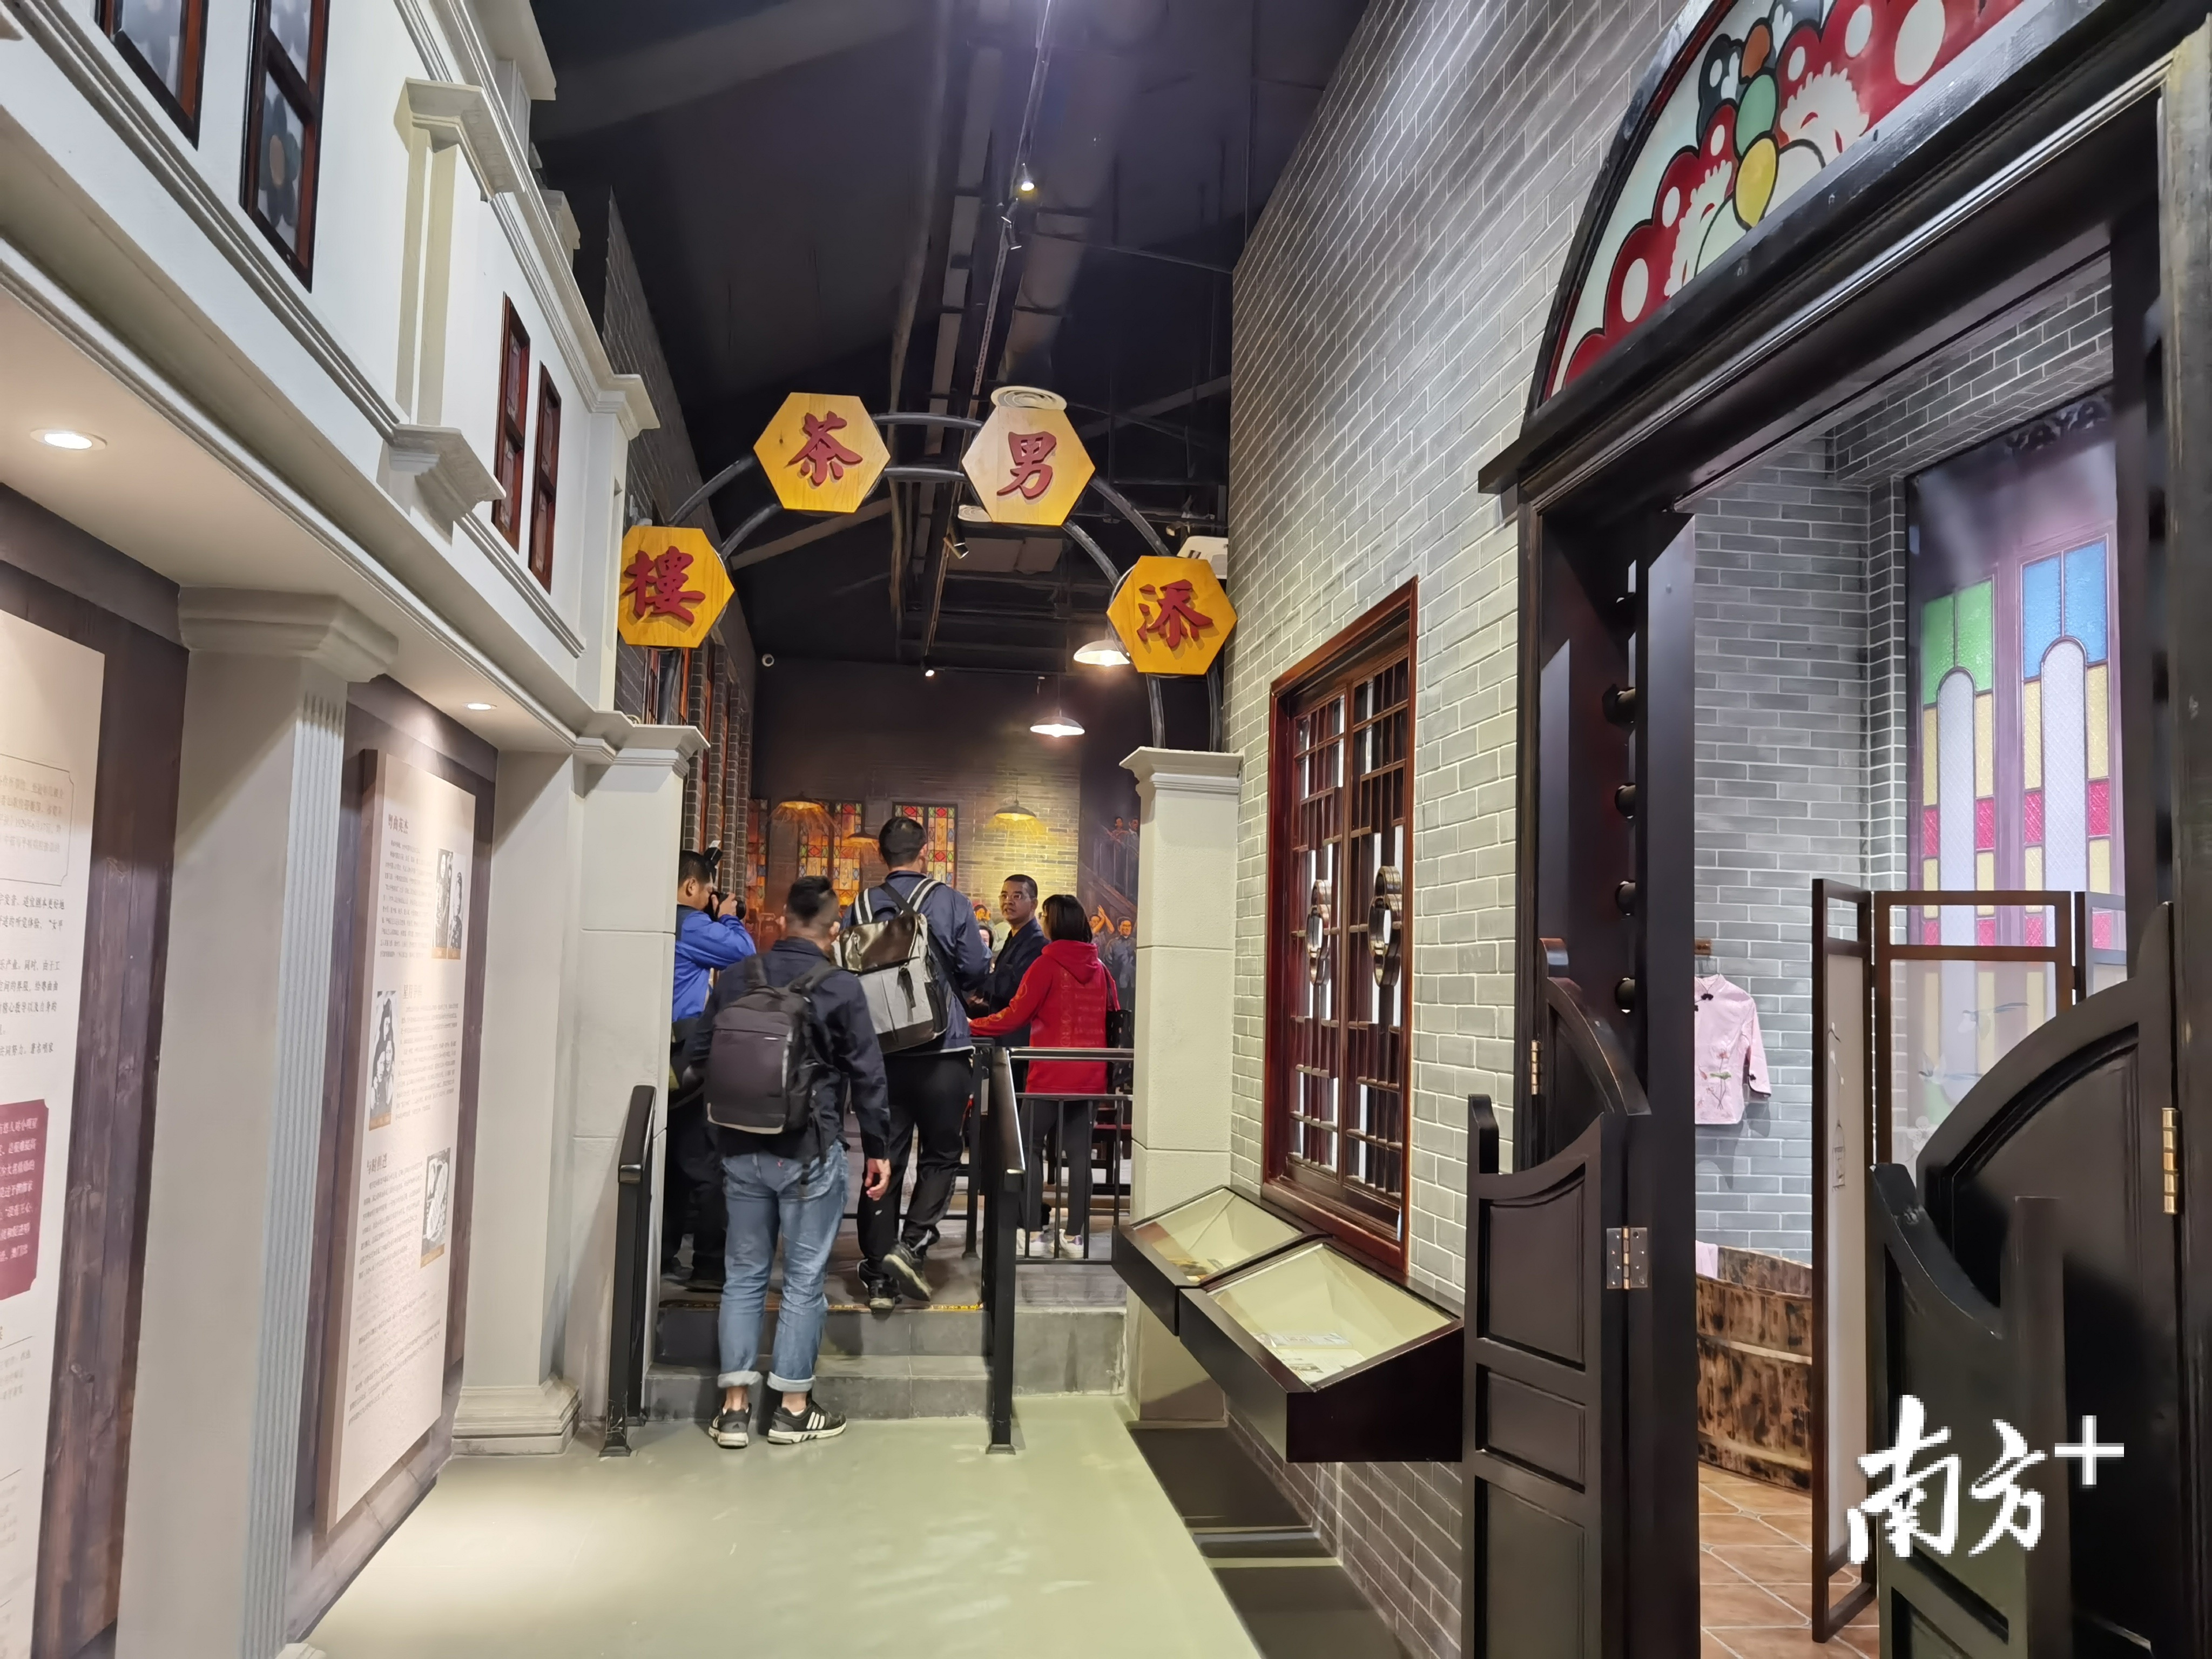 纪念馆展示具有广府文化特色街景,小明星在广州的住家场景,小明星演唱